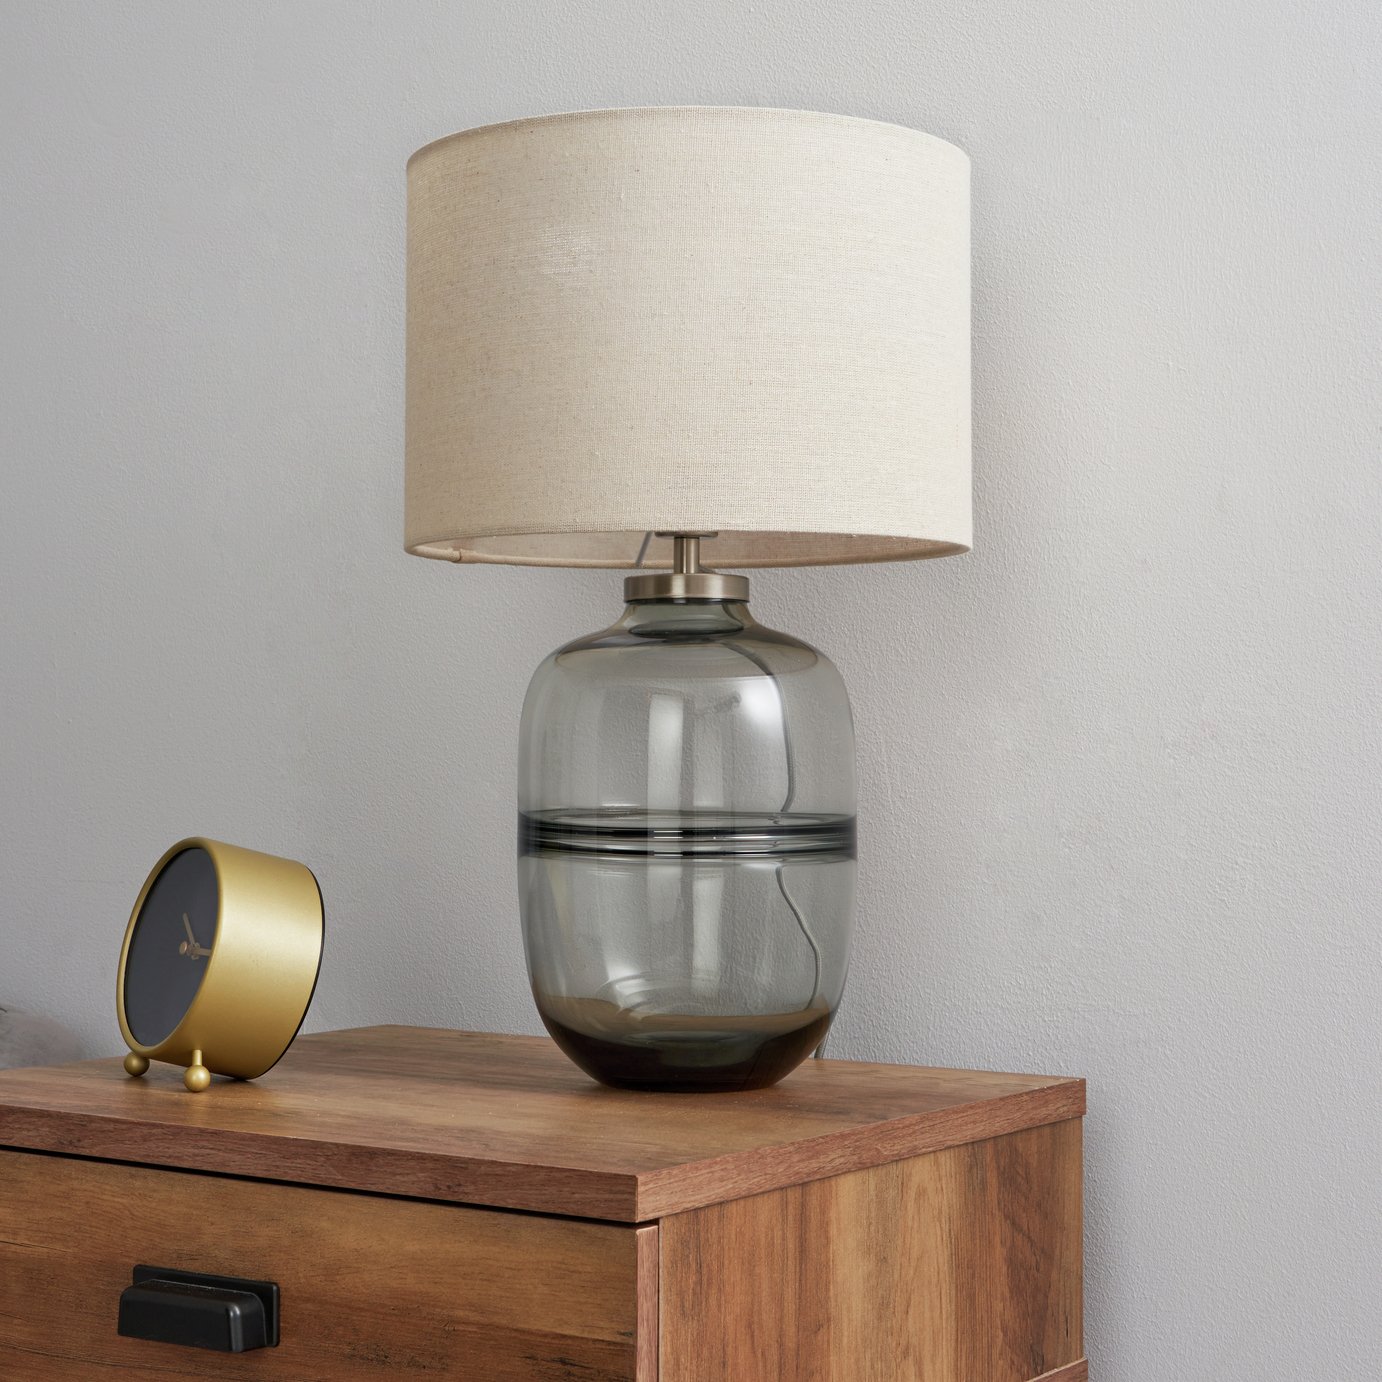 BHS Amelia Glass Table Lamp - Smoke Grey & Brown